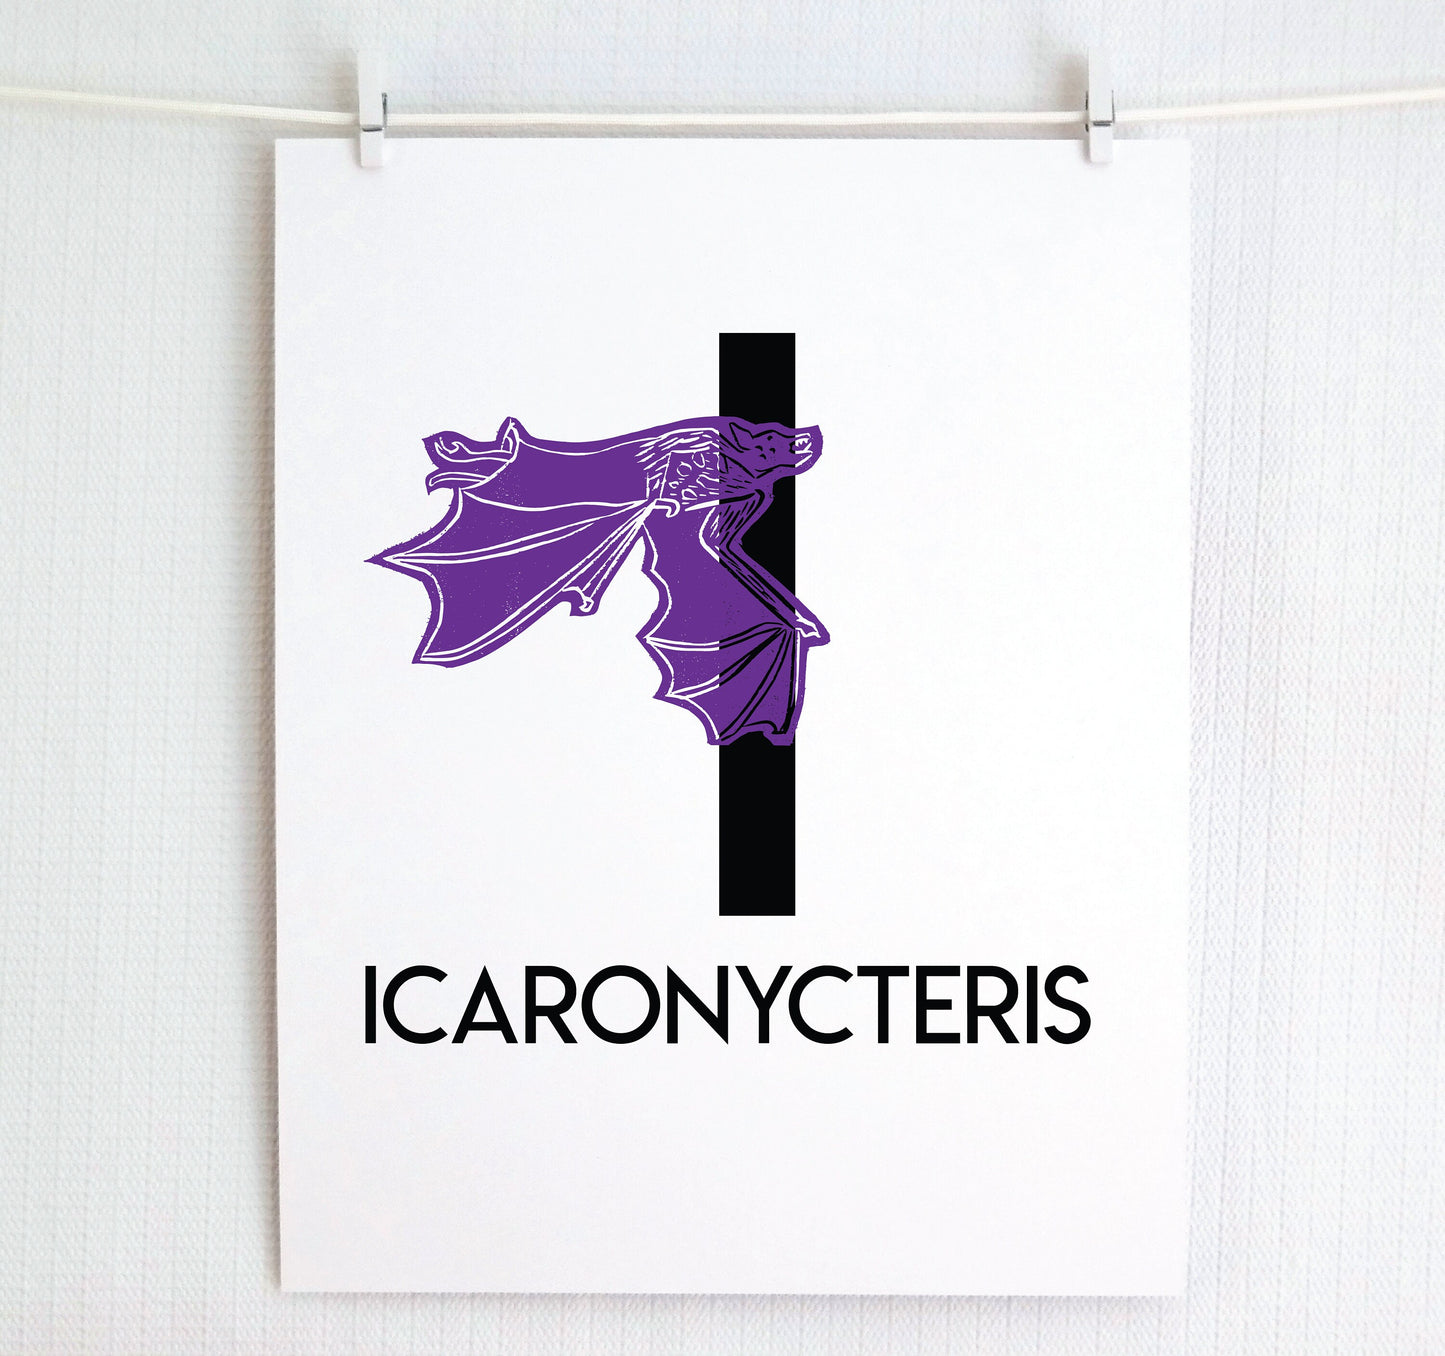 I is for Icaronycteris